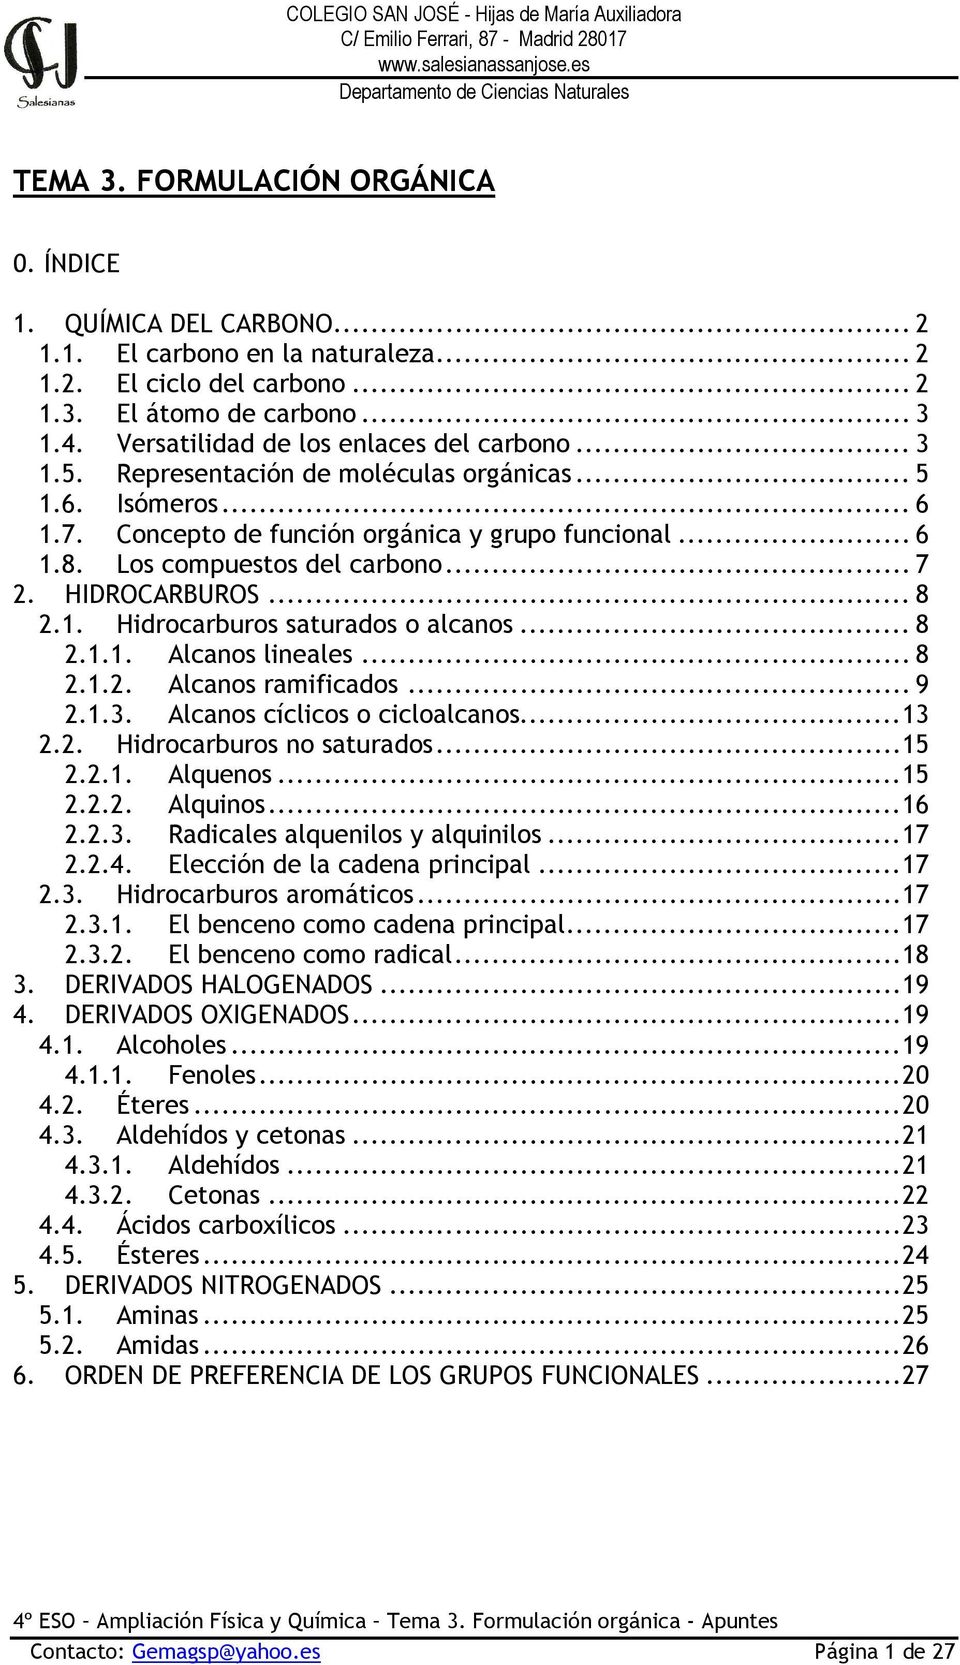 Los compuestos del carbono... 7 2. HIDROCARBUROS... 8 2.1. Hidrocarburos saturados o alcanos... 8 2.1.1. Alcanos lineales... 8 2.1.2. Alcanos ramificados... 9 2.1.3. Alcanos cíclicos o cicloalcanos.